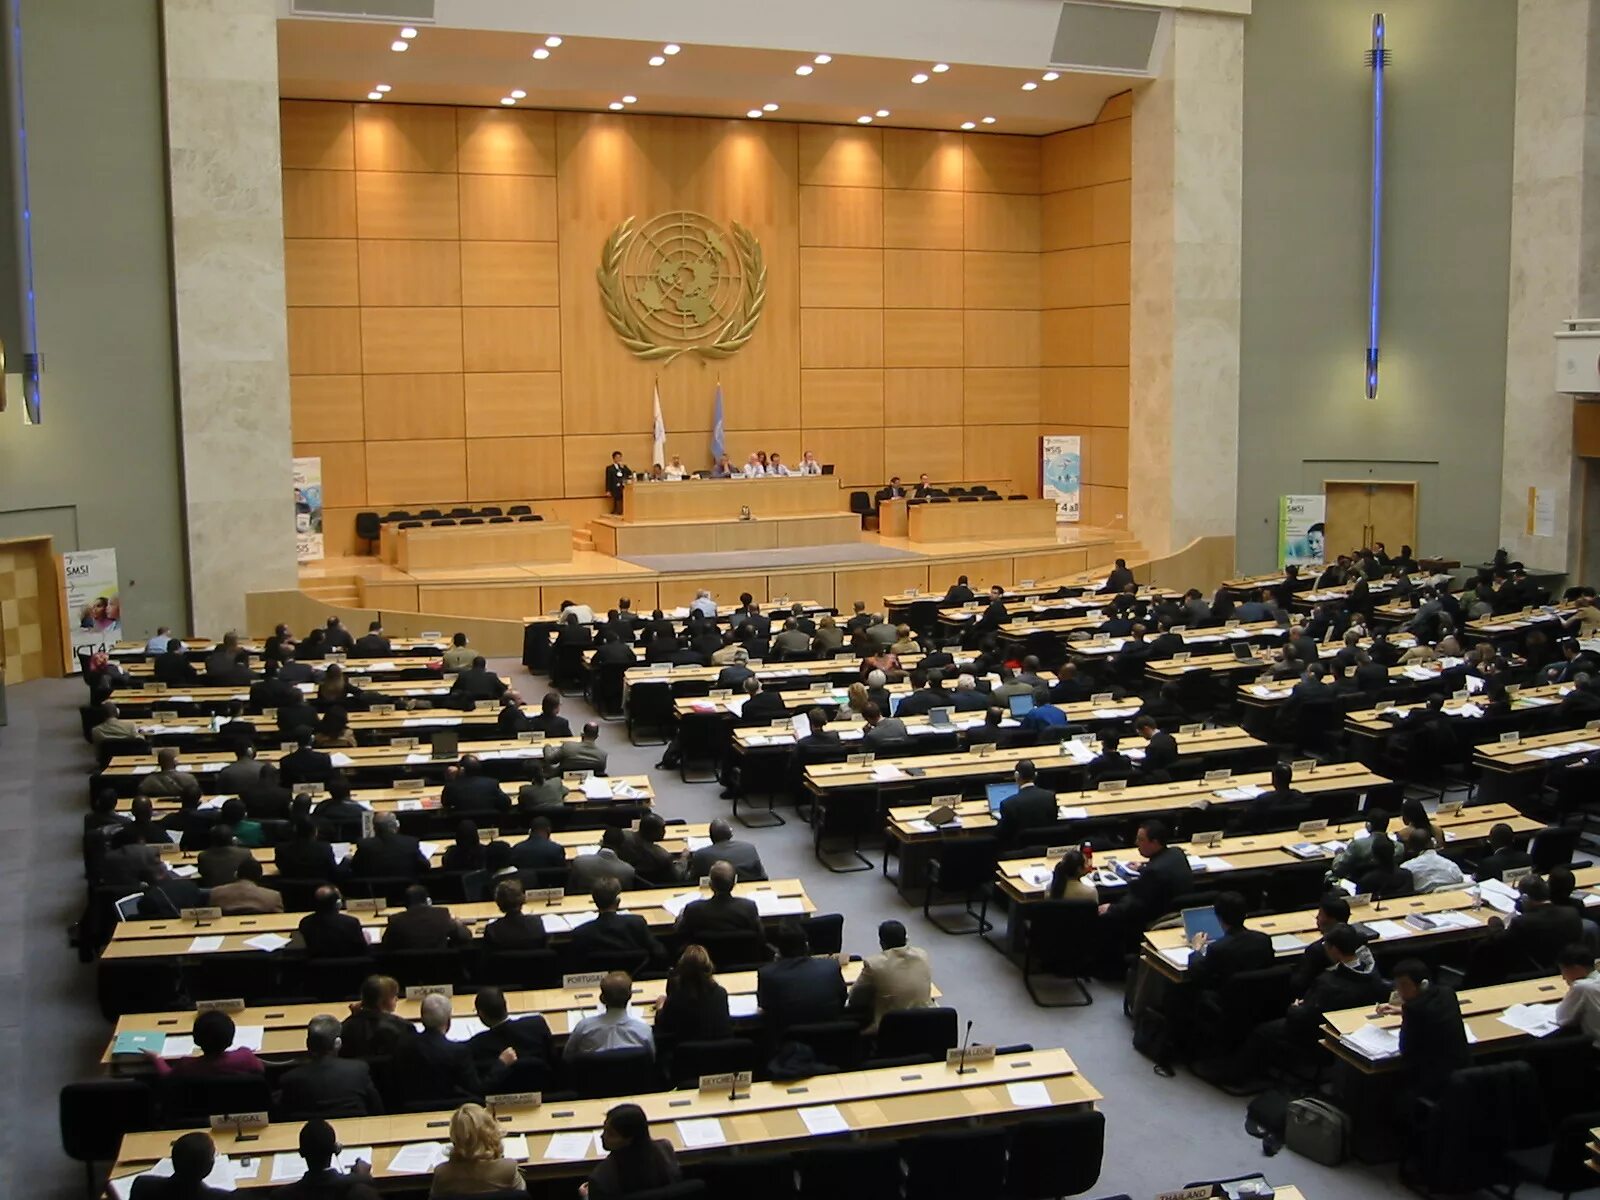 Дом оон. Залы ООН Женева дворец наций. Зал заседаний ООН В Женеве. Отделение организации Объединённых наций в Женеве. Территория ООН В Женеве.